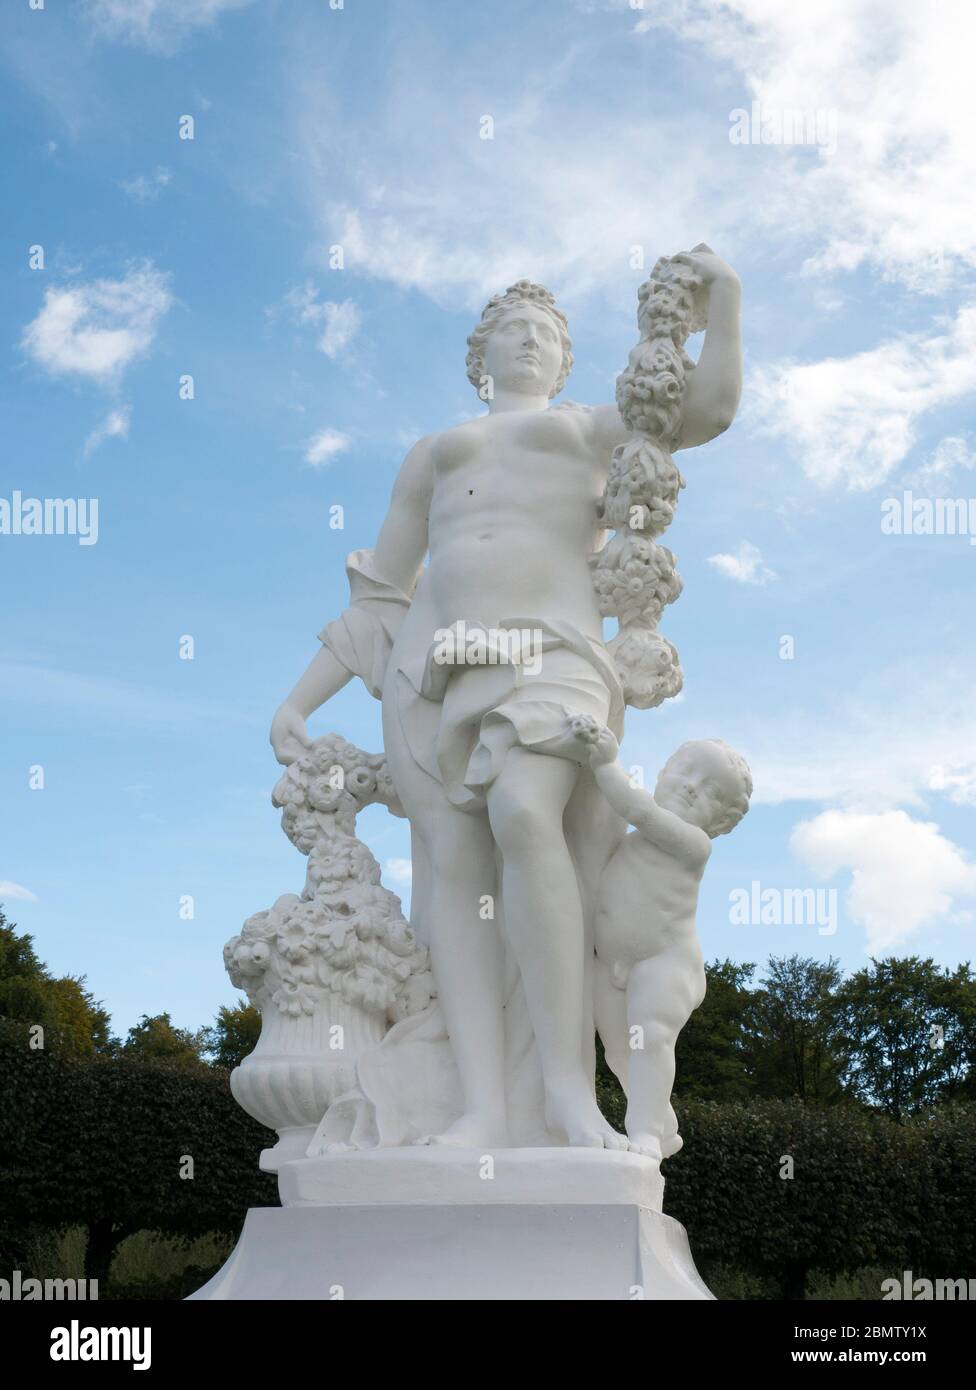 Statua im Schlosspark Brühl, Schloss Augustusburg, Brühl, NRW, Deutschland Foto Stock